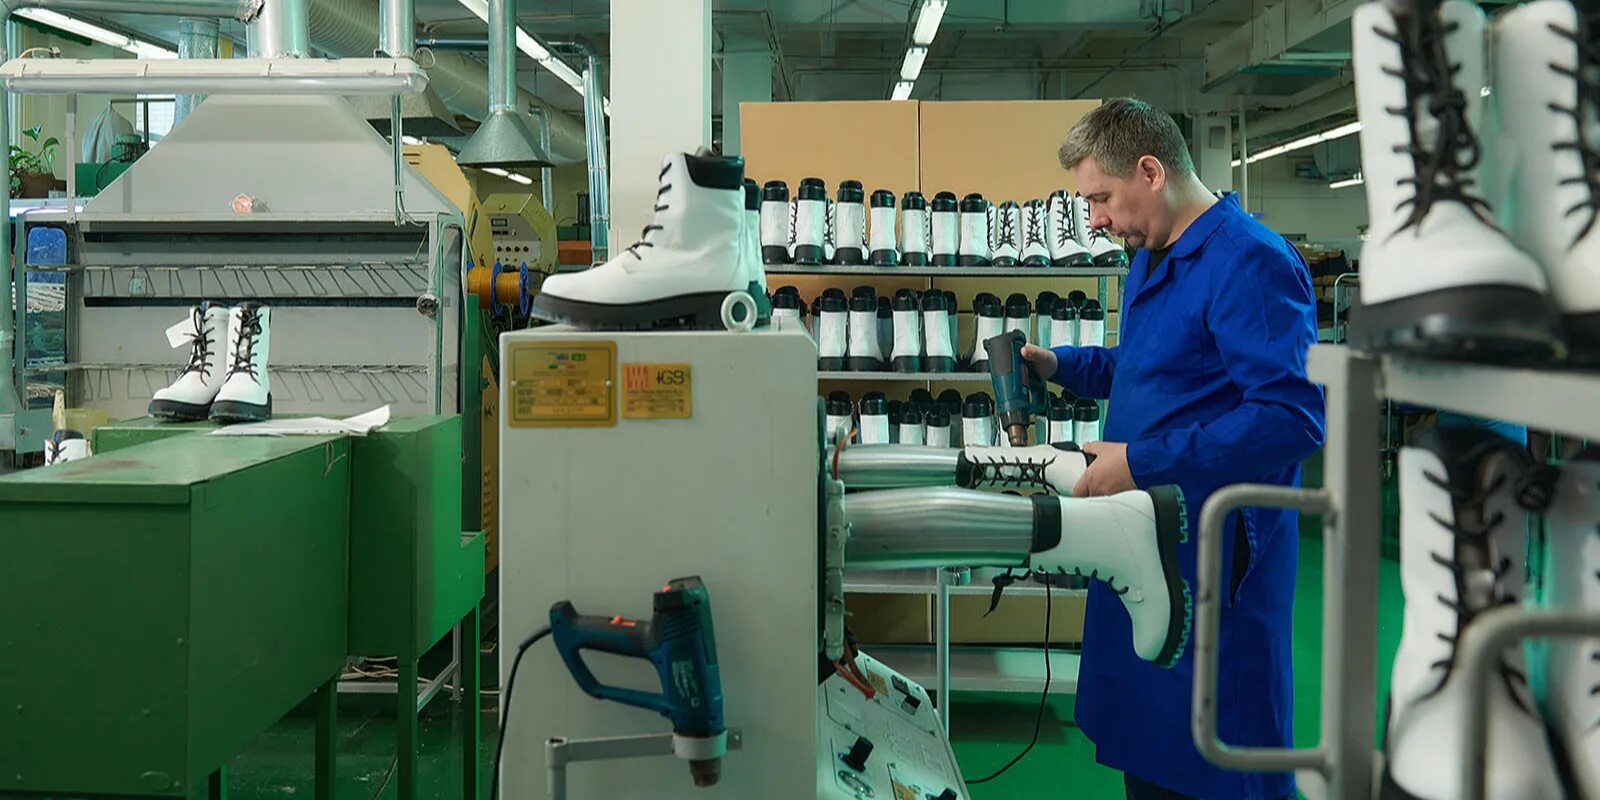 Фабрики москвы производство. Обувная фабрика Парижская коммуна. Обувная фабрика Парижская коммуна эфир 1983. Обувная промышленность. Производство обуви.